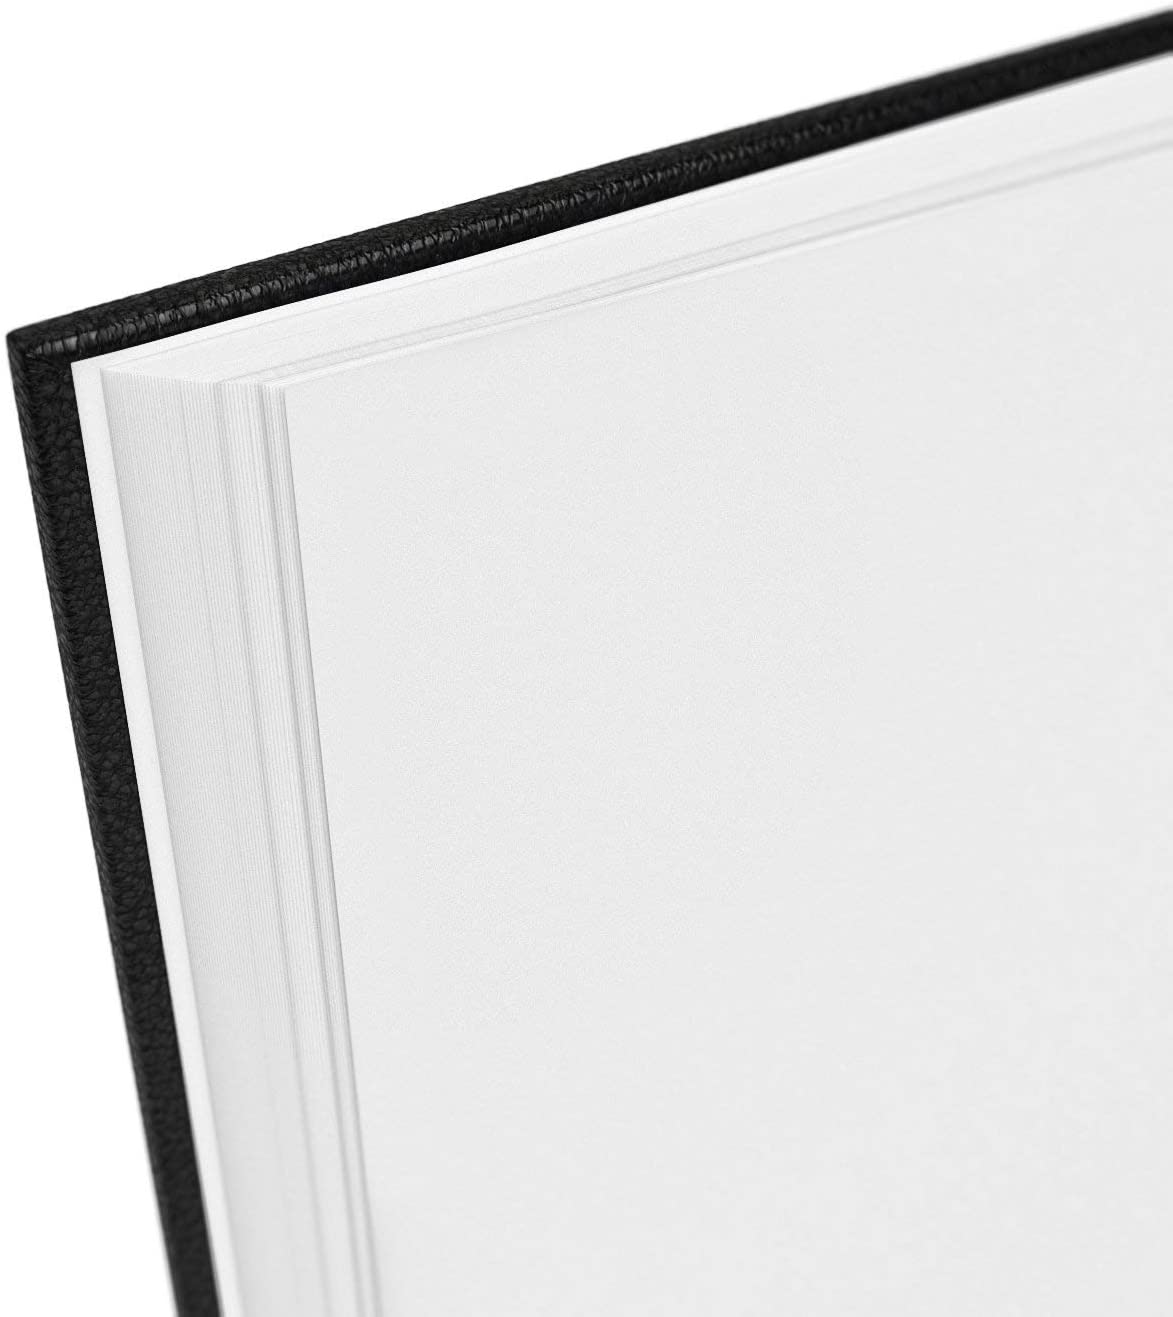 Sketchbook, Hardbound, 8.5" x 11", 100 Sheets - Pack of 2